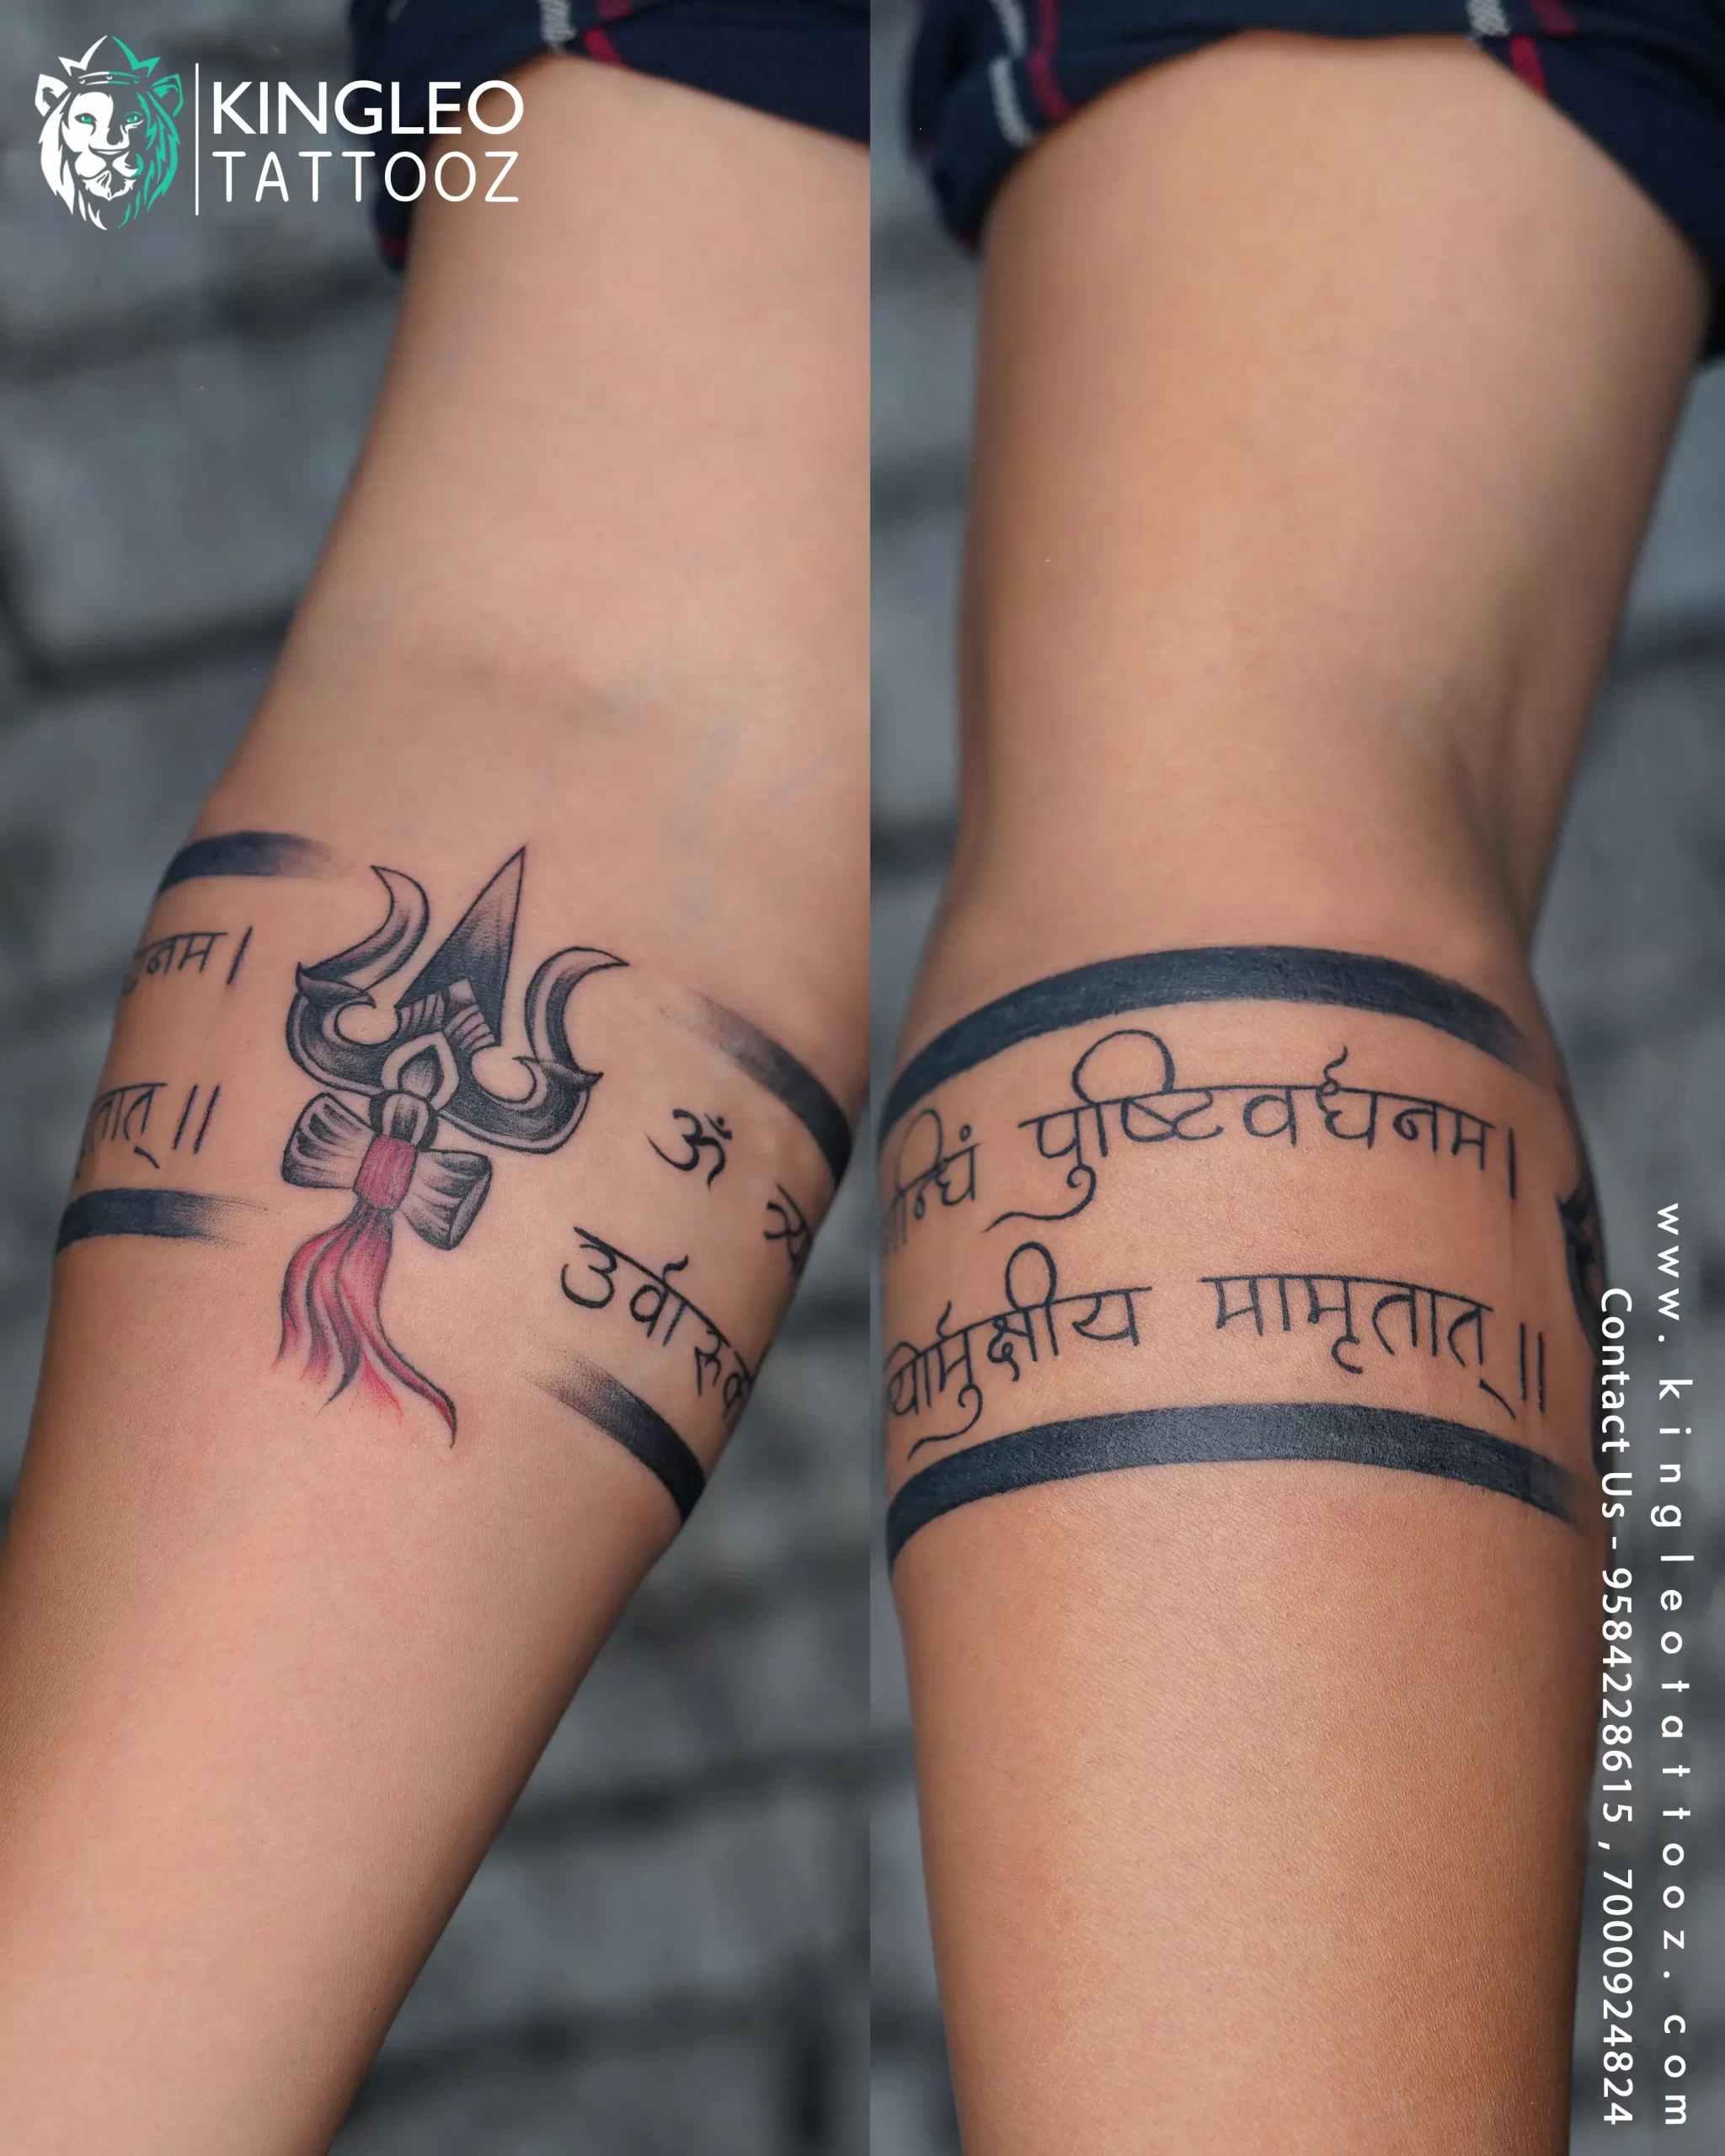 mrutyunjay slok tattoo design|slok tattoo design|samurai tattoo design |  Back tattoos for guys, Shiva tattoo design, Arm tattoos for guys